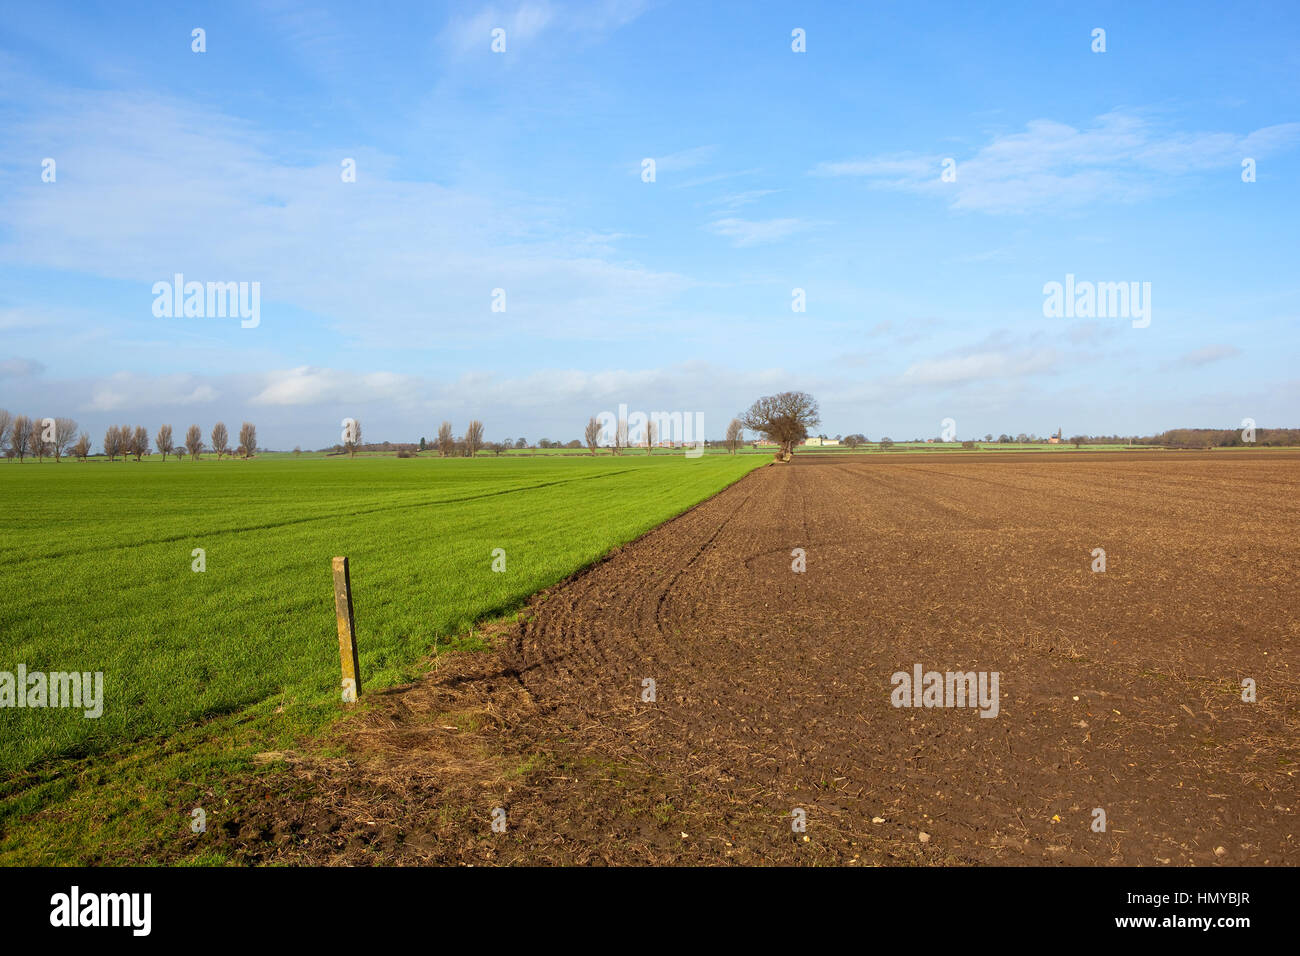 üppige grüne Weizenernte in der Nähe von neu gepflügten Boden in Yorkshire Landschaft mit Bäumen und Hecken unter blauem Himmel mit weißen Wolke im winter Stockfoto